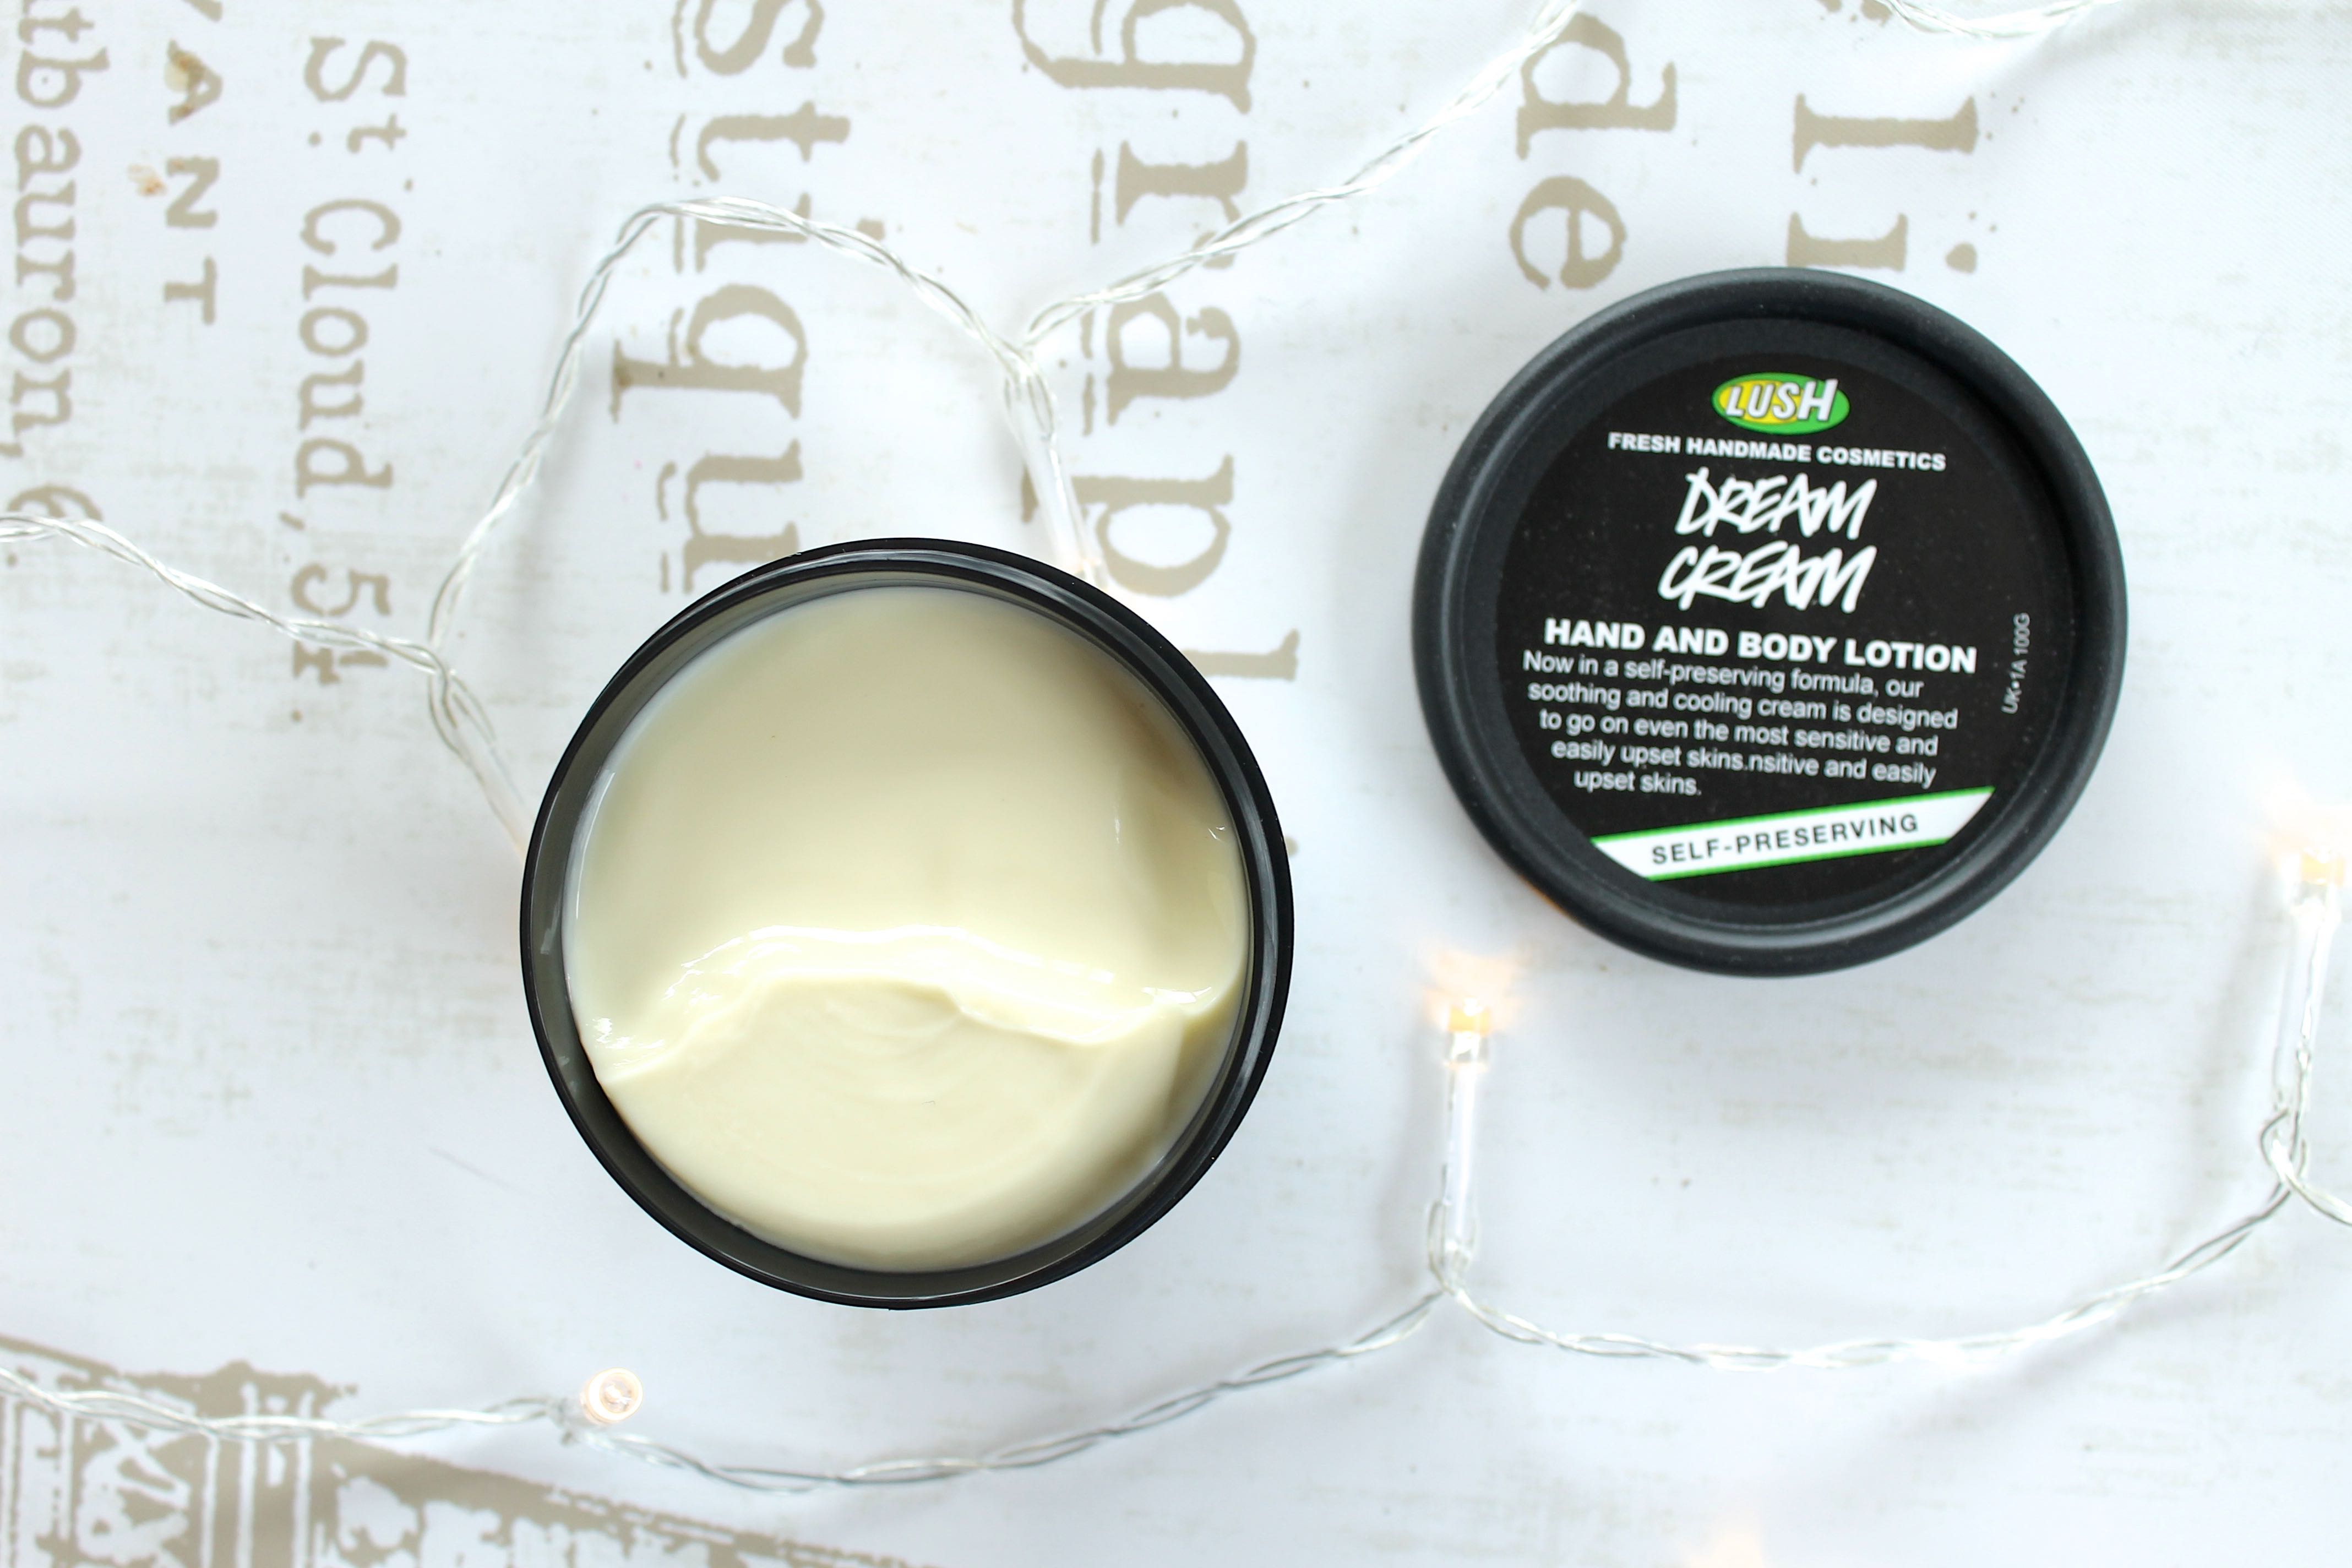 Lush dream cream lotion